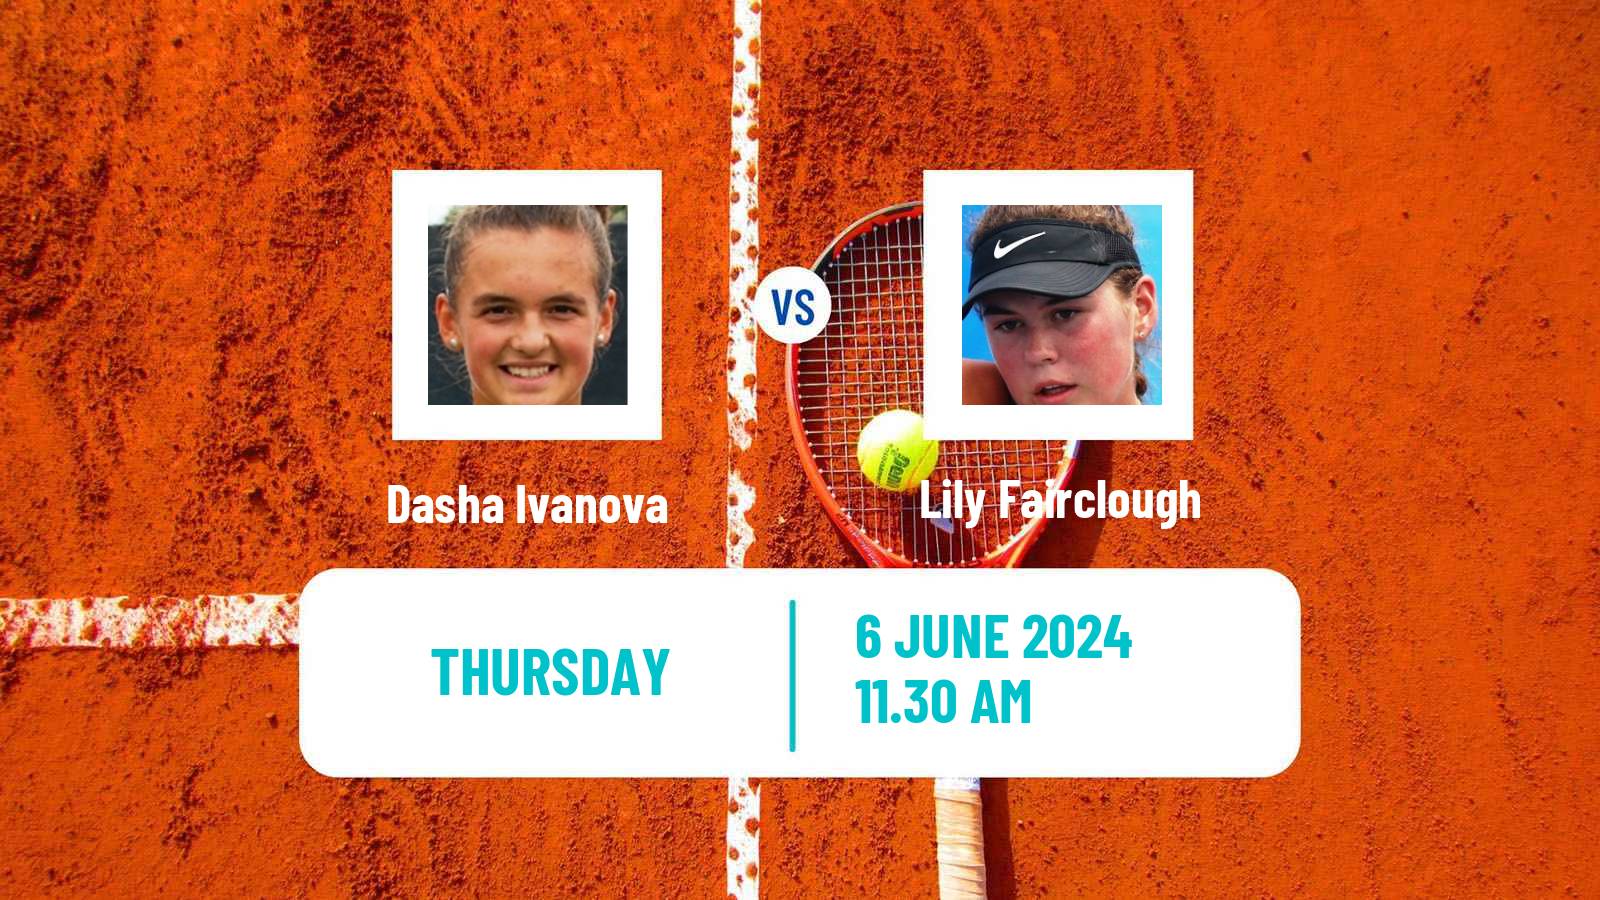 Tennis ITF W15 San Diego Ca 2 Women Dasha Ivanova - Lily Fairclough